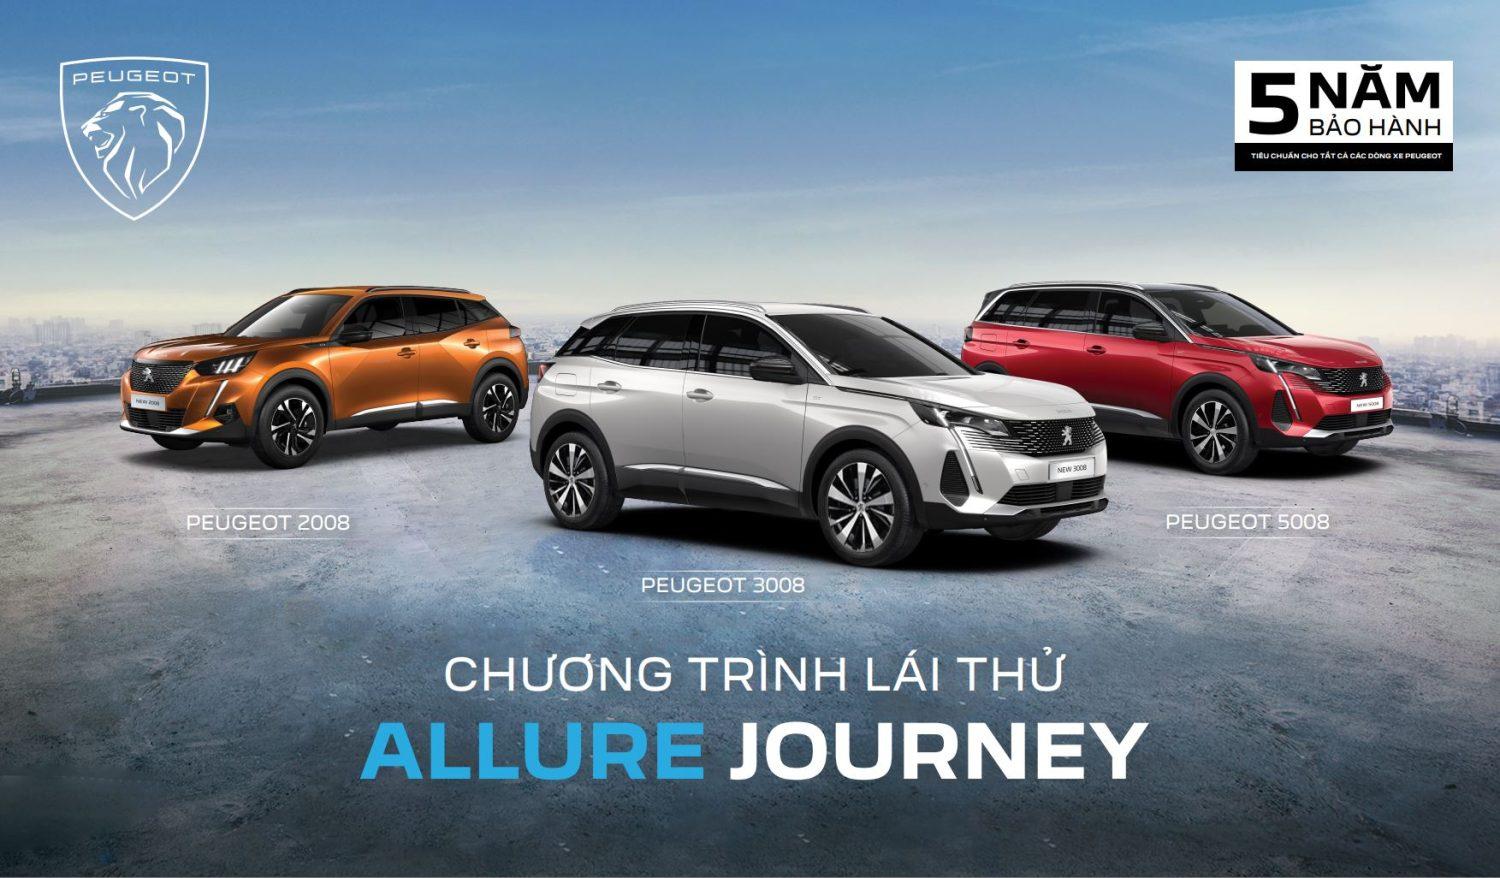 Peugeot Allure Journey - Hành Trình Cảm Xúc